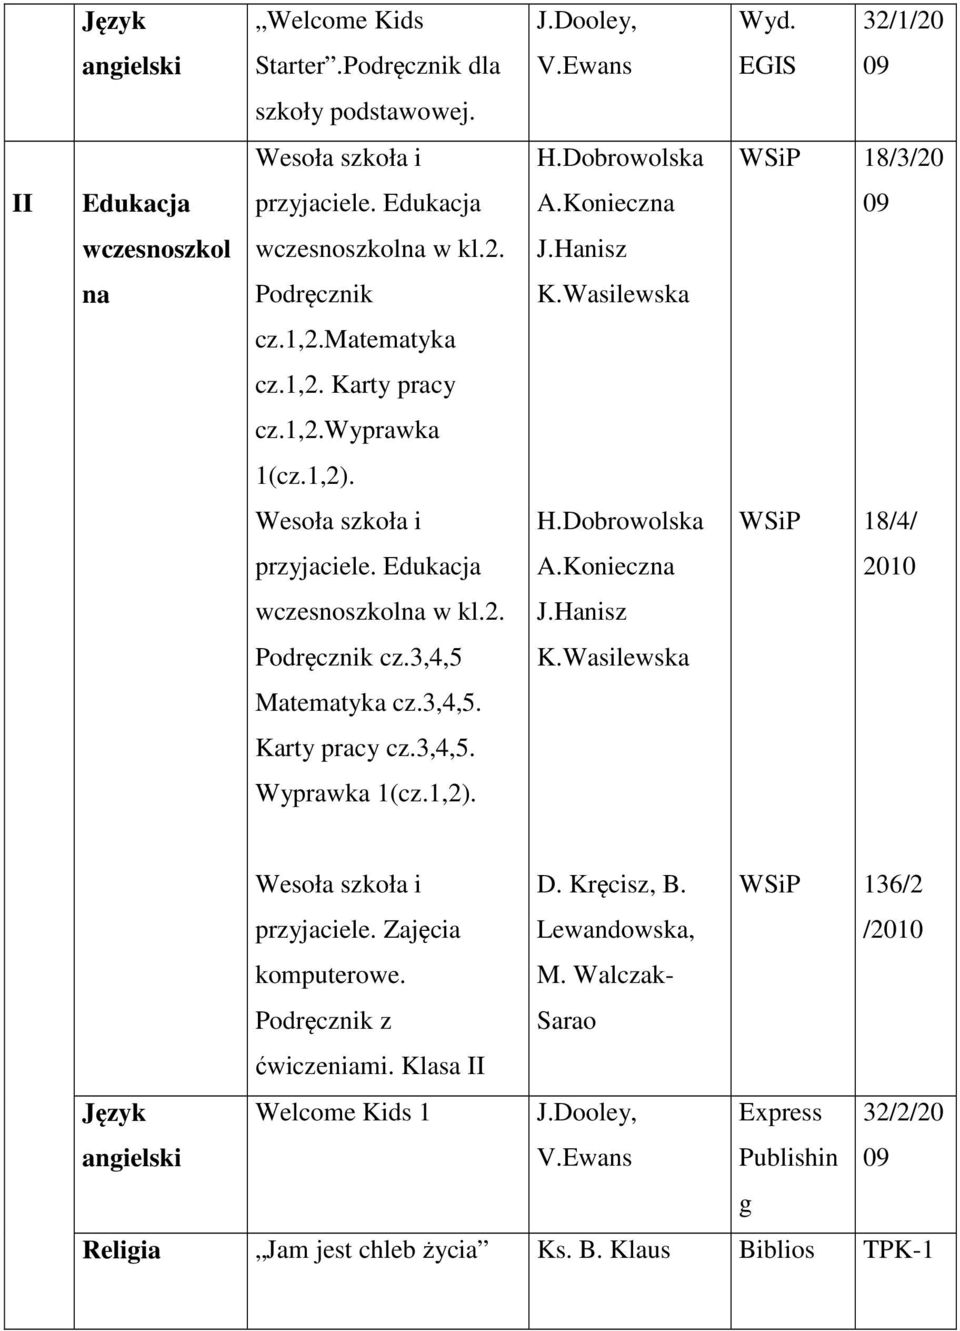 Edukacja A.Konieczna 2010 wczesnoszkolna w kl.2. J.Hanisz Podręcznik cz.3,4,5 K.Wasilewska Matematyka cz.3,4,5. Karty pracy cz.3,4,5. Wyprawka 1(cz.1,2). przyjaciele. Zajęcia komputerowe.